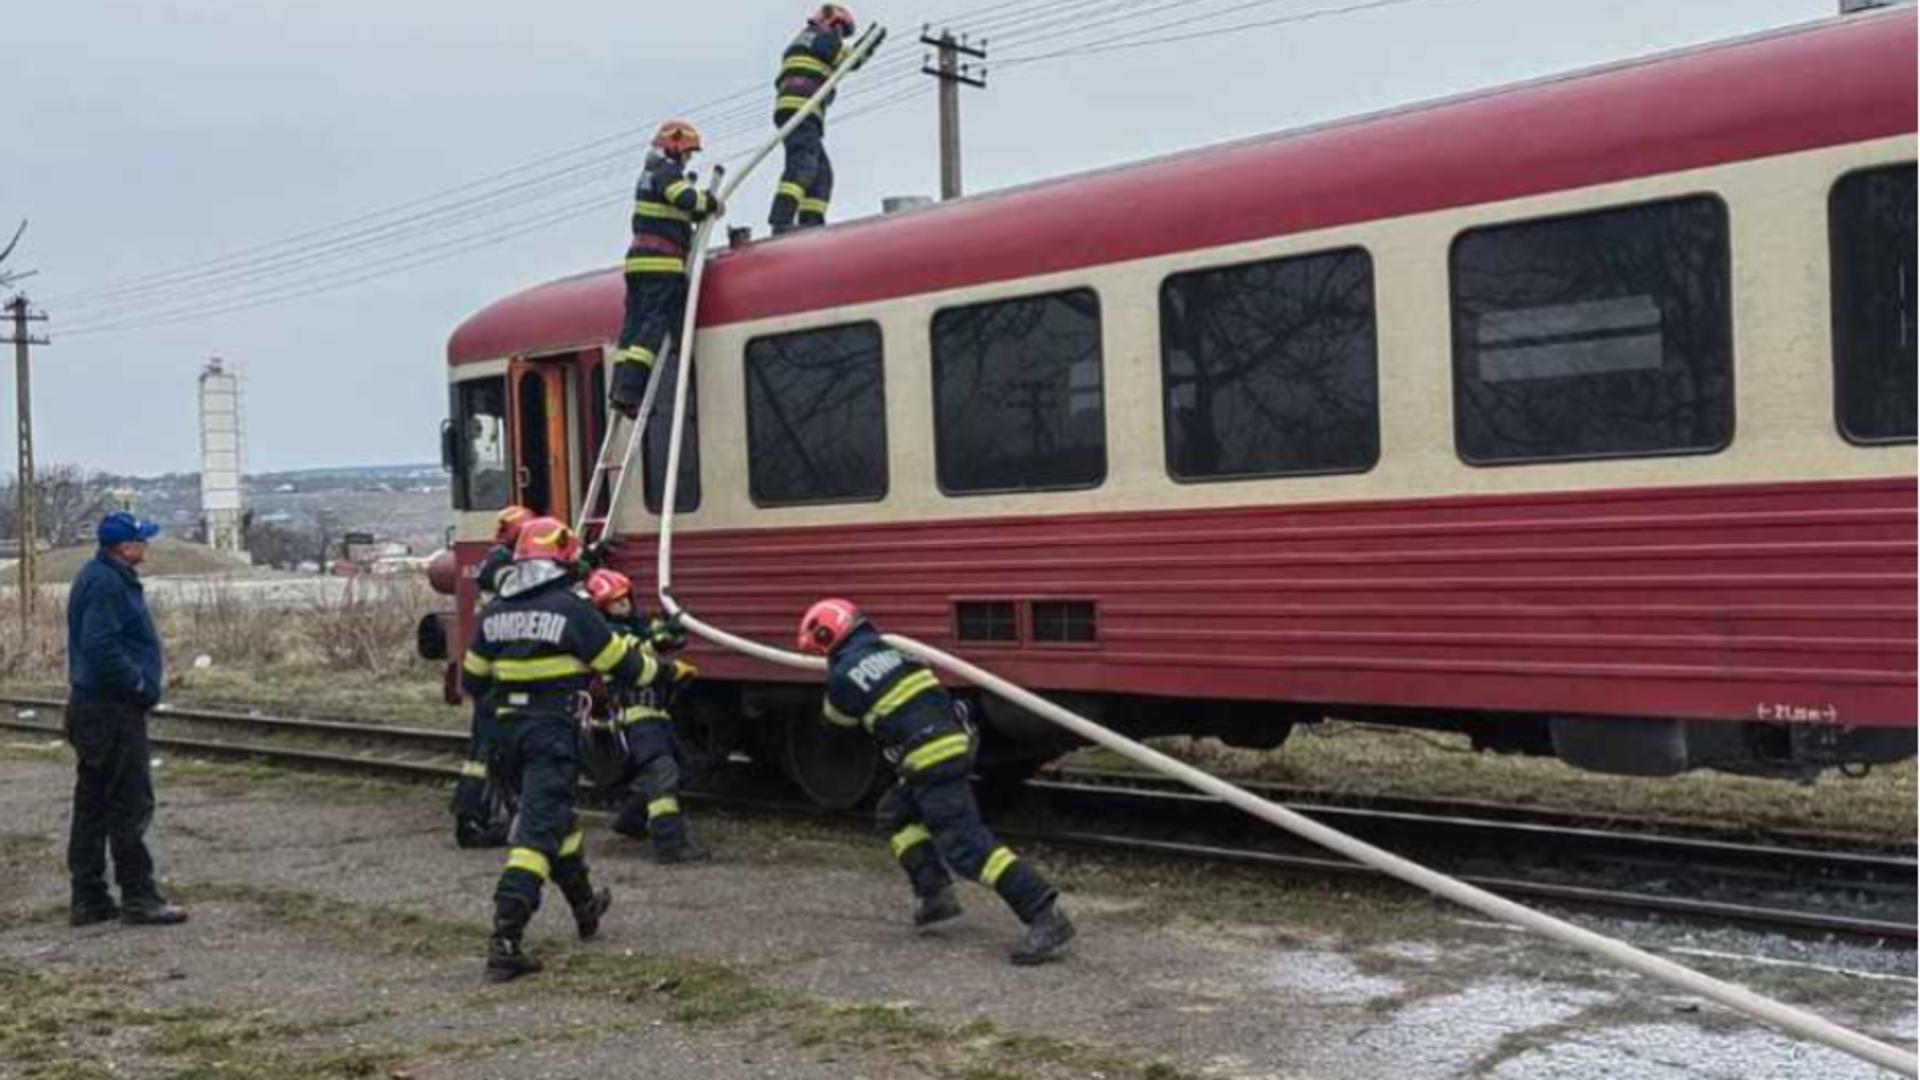 Incendiu la un tren care circula pe ruta Iaşi-Hârlău. Pasagerii s-au autoevacuat/ ISU Iași